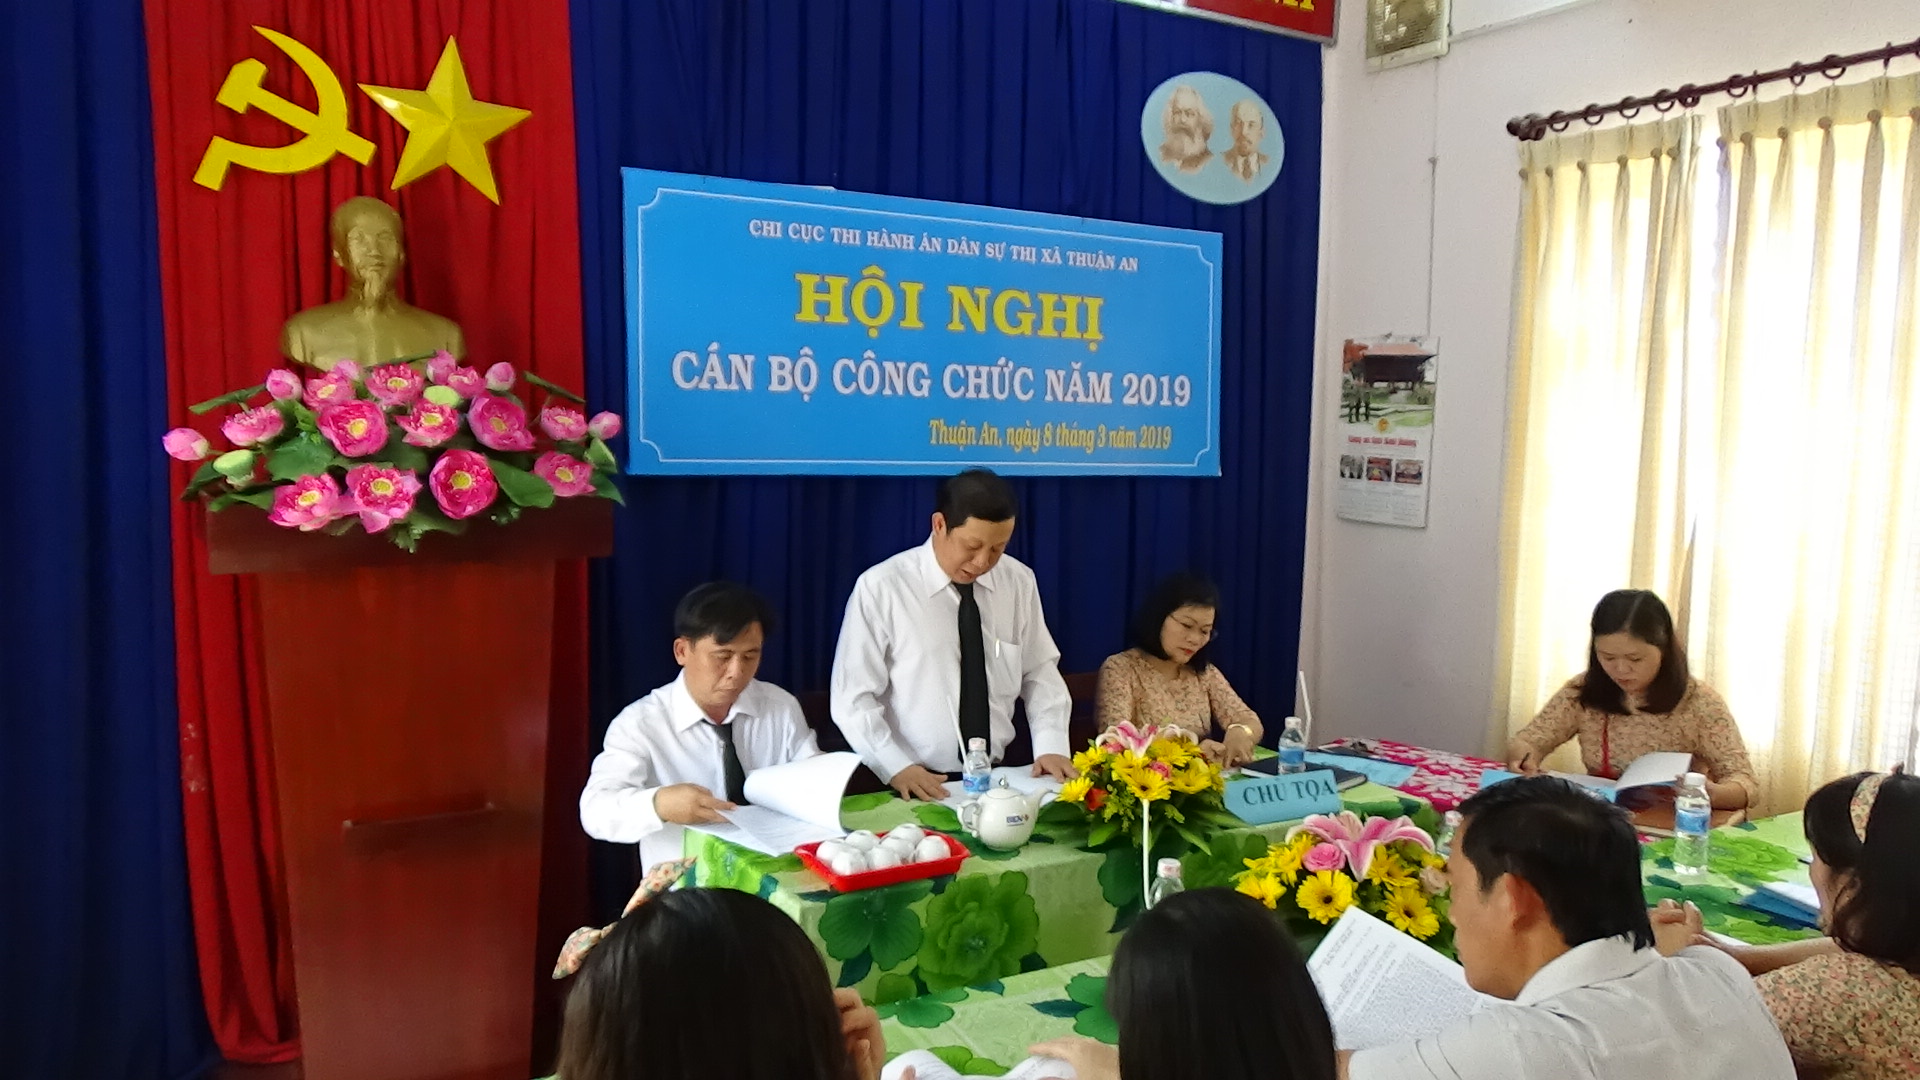 Chi cục Thi hành án dân sự thị xã Thuận An tổ chức  Hội nghị cán bộ, công chức năm 2019